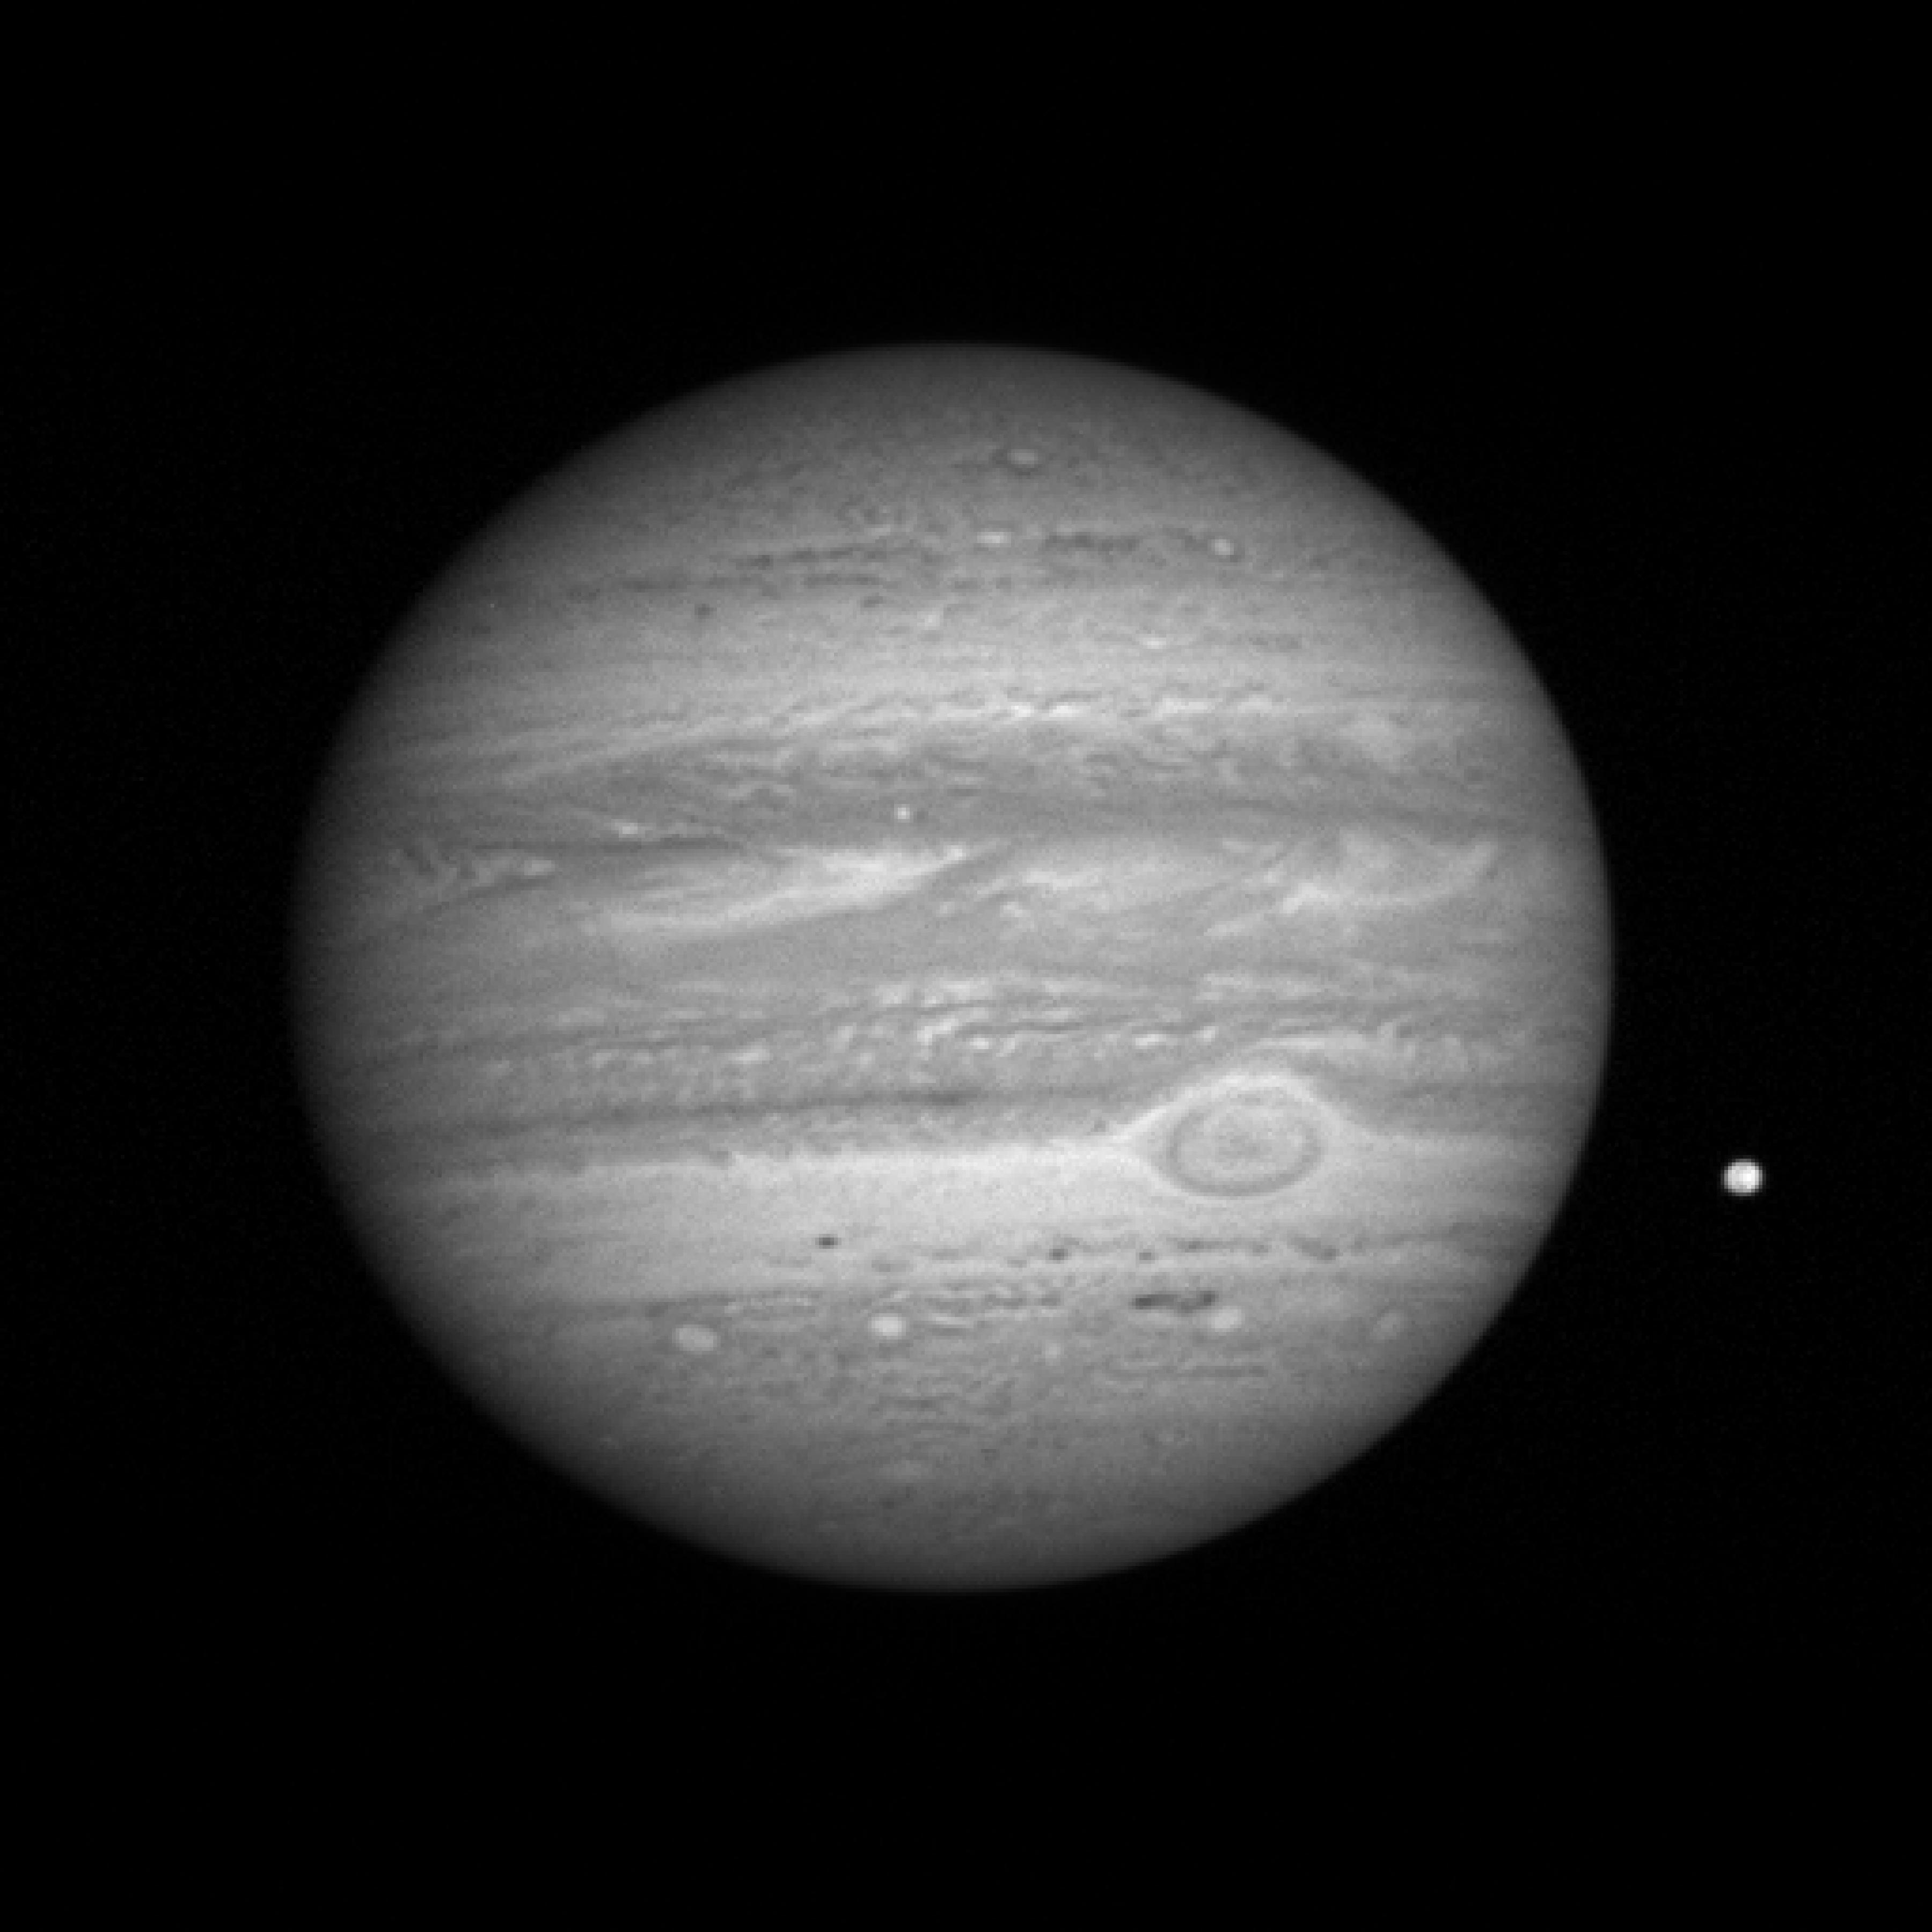 FileJupiter taken by New Horizons probe (20070108).jpg Wikimedia